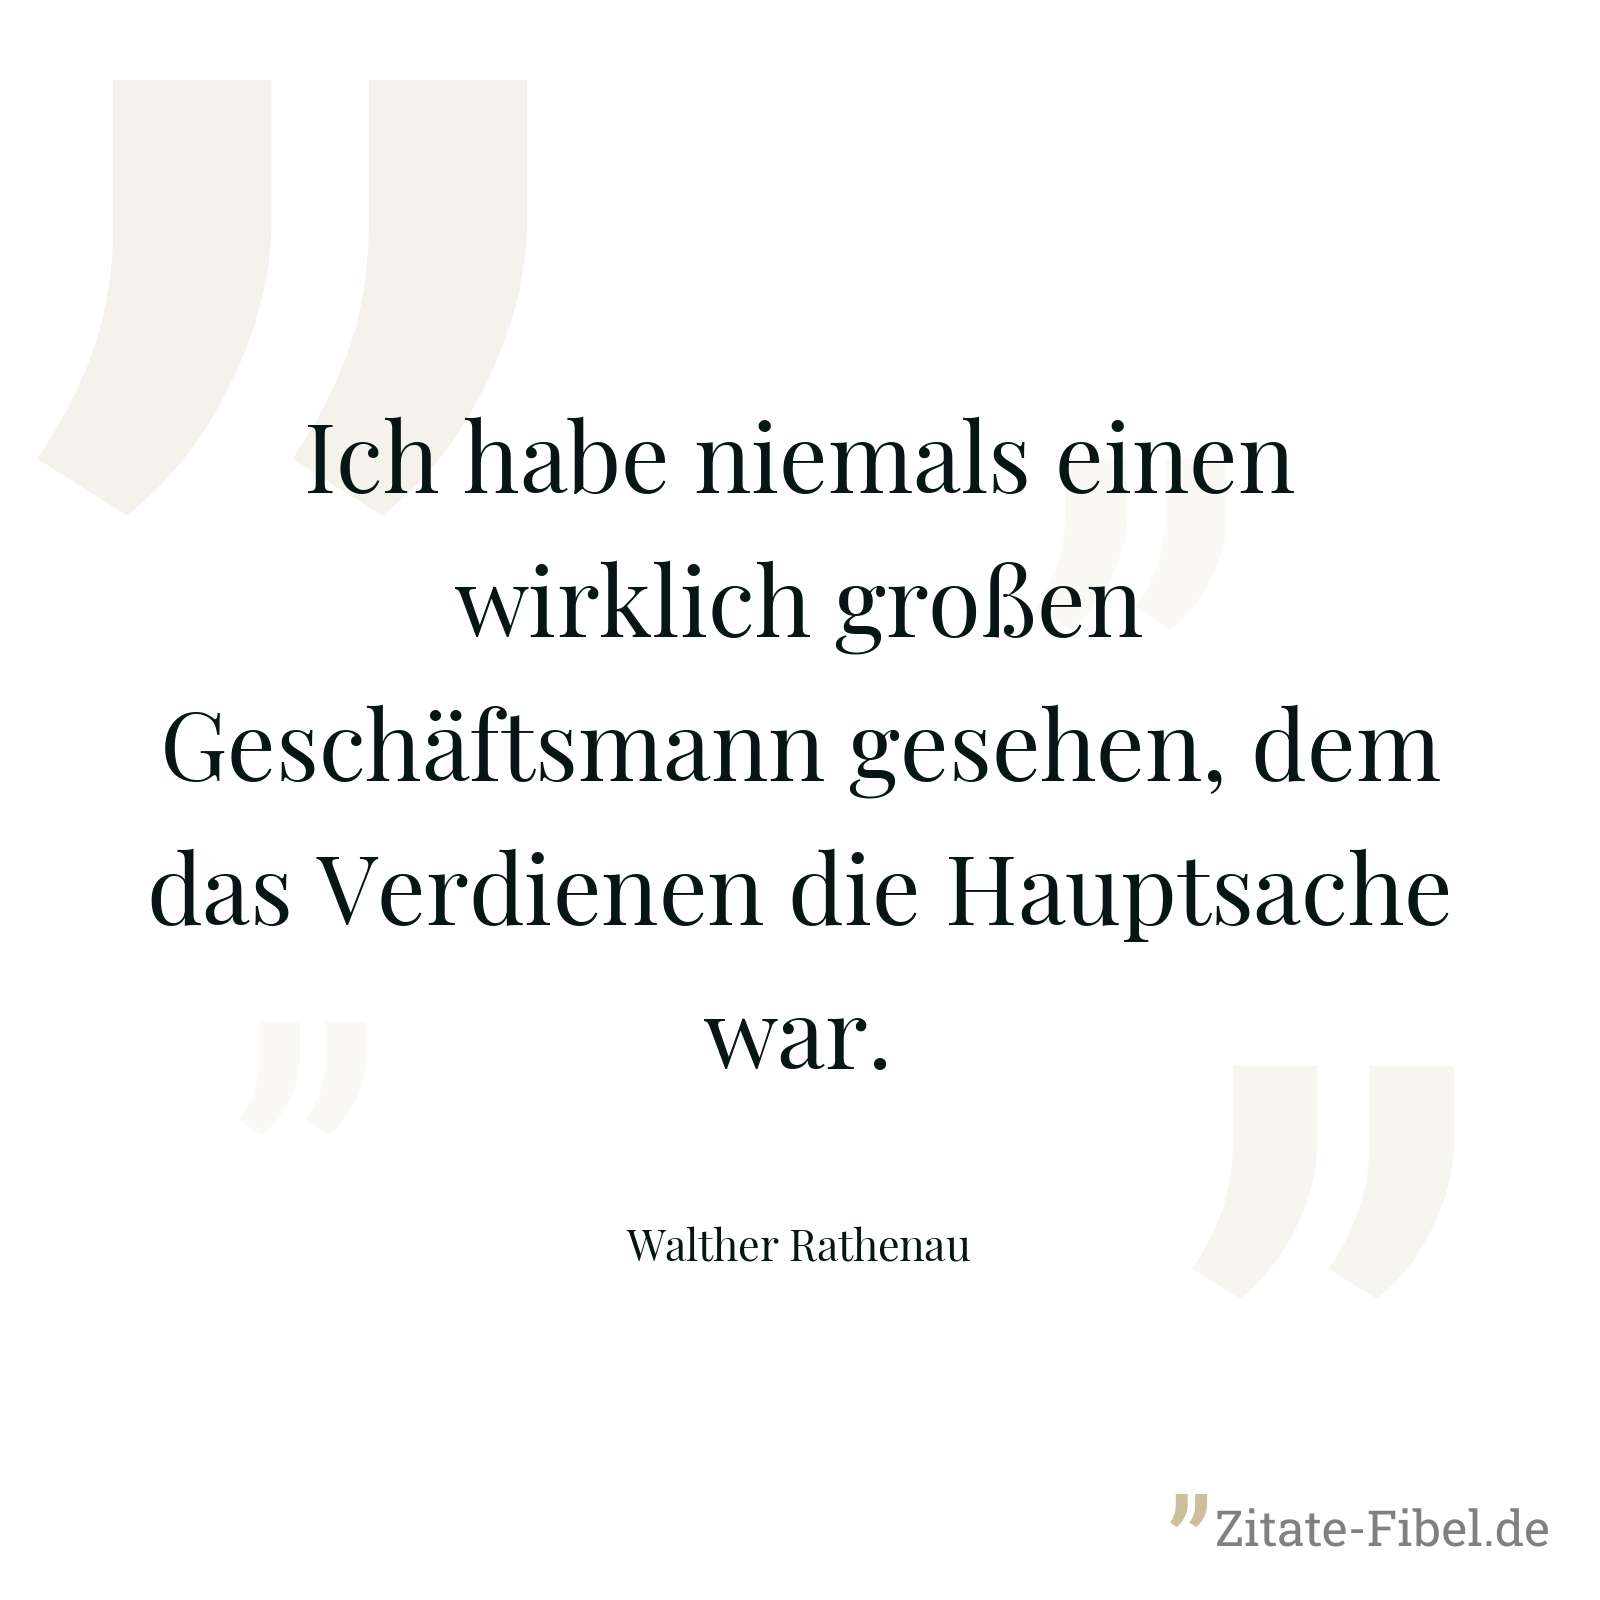 Ich habe niemals einen wirklich großen Geschäftsmann gesehen, dem das Verdienen die Hauptsache war. - Walther Rathenau